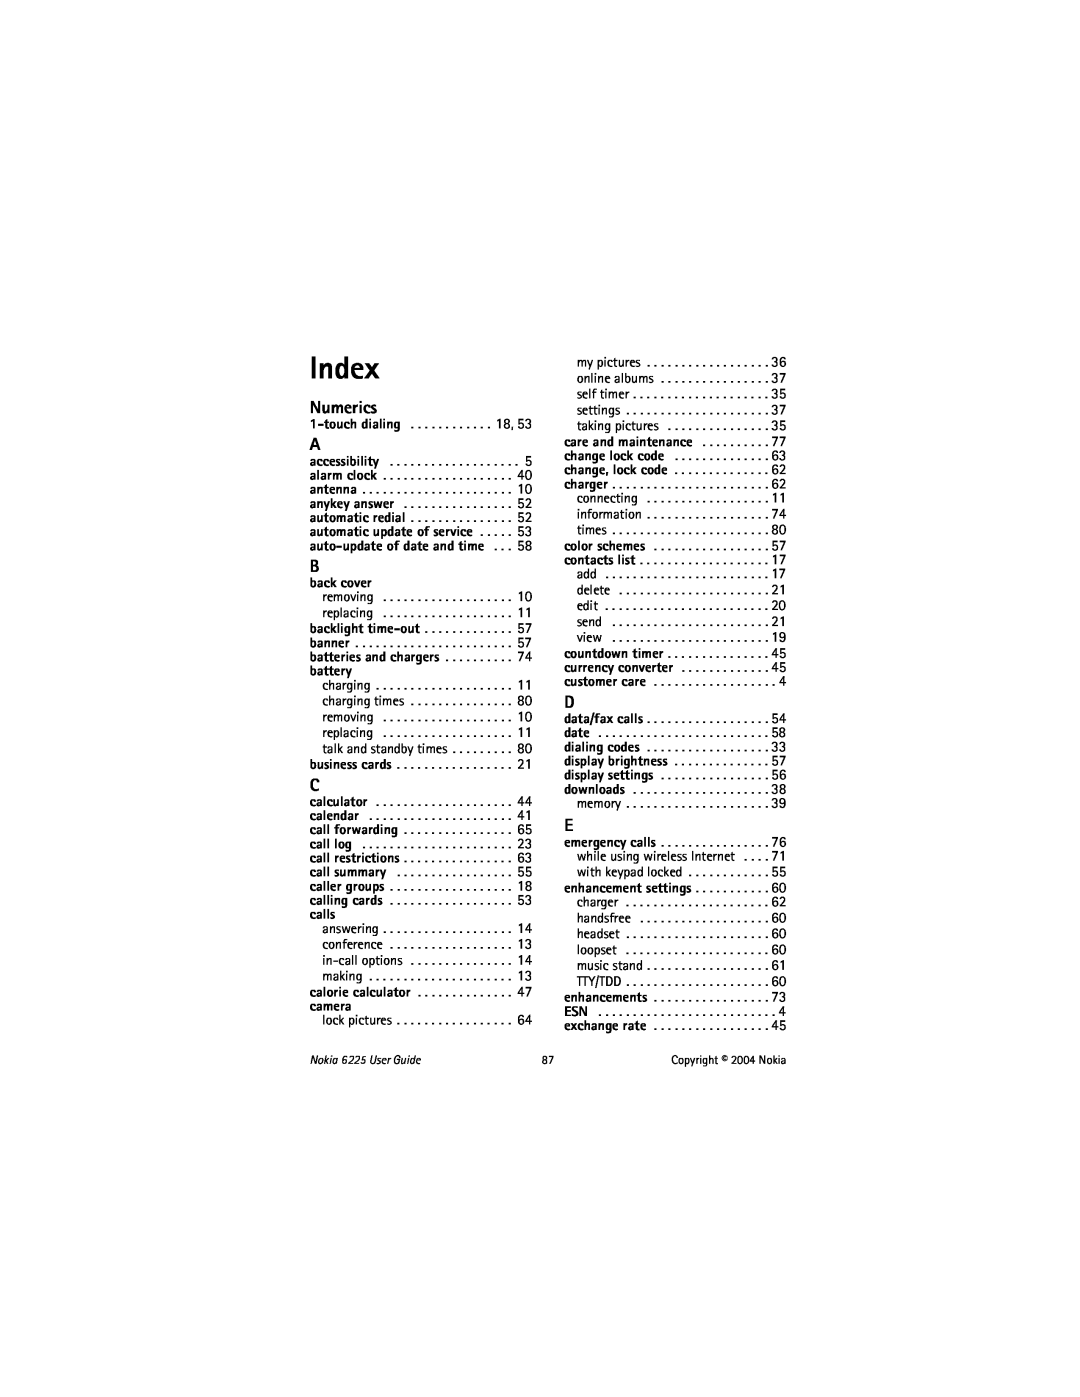 Nokia manual Index, Numerics, back cover, Nokia 6225 User Guide, Copyright 2004 Nokia 